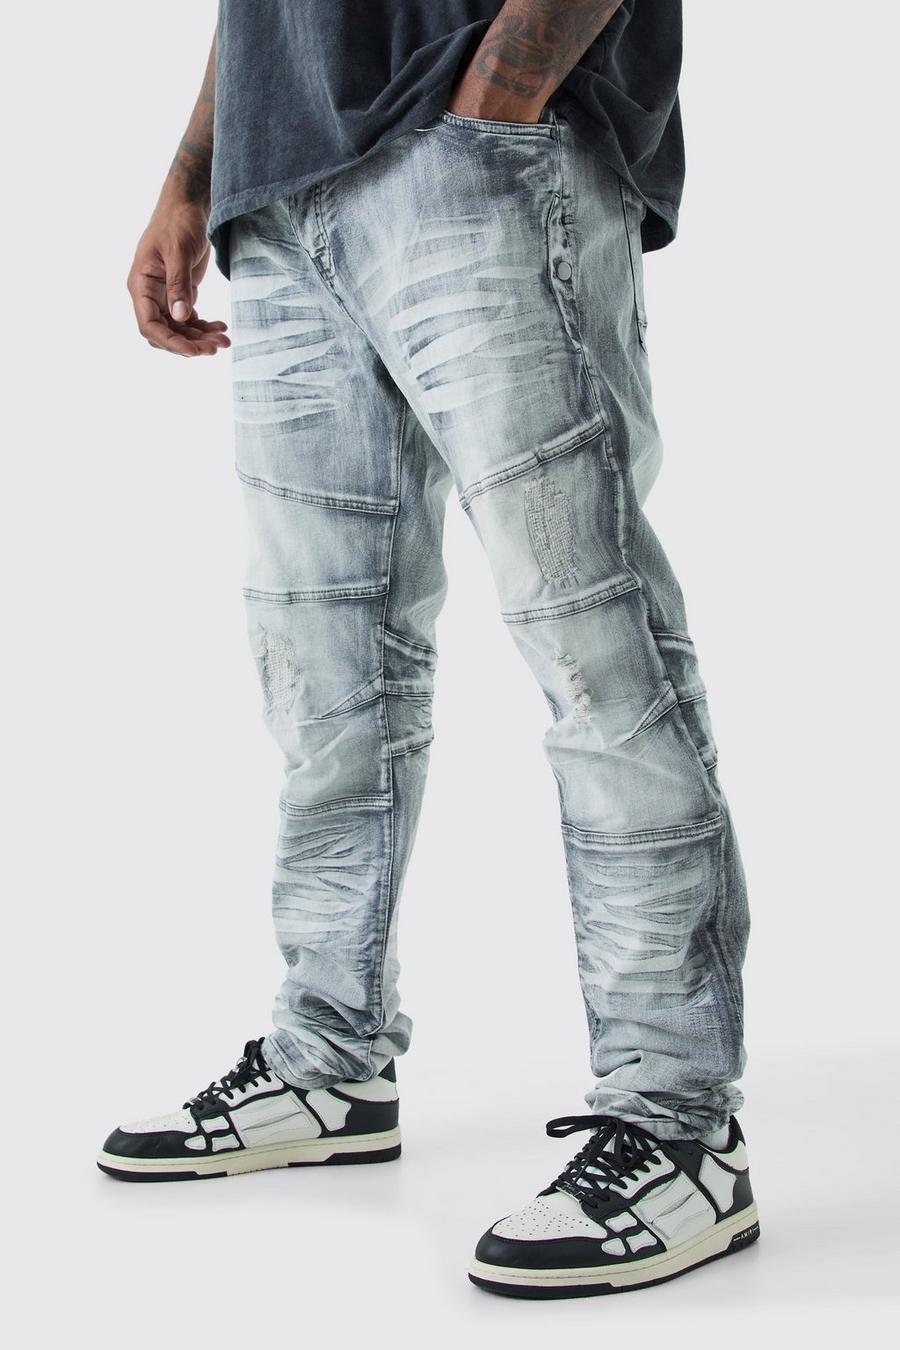 Jeans Plus Size Skinny Fit Stretch pesanti candeggiati con strappi, Ice grey